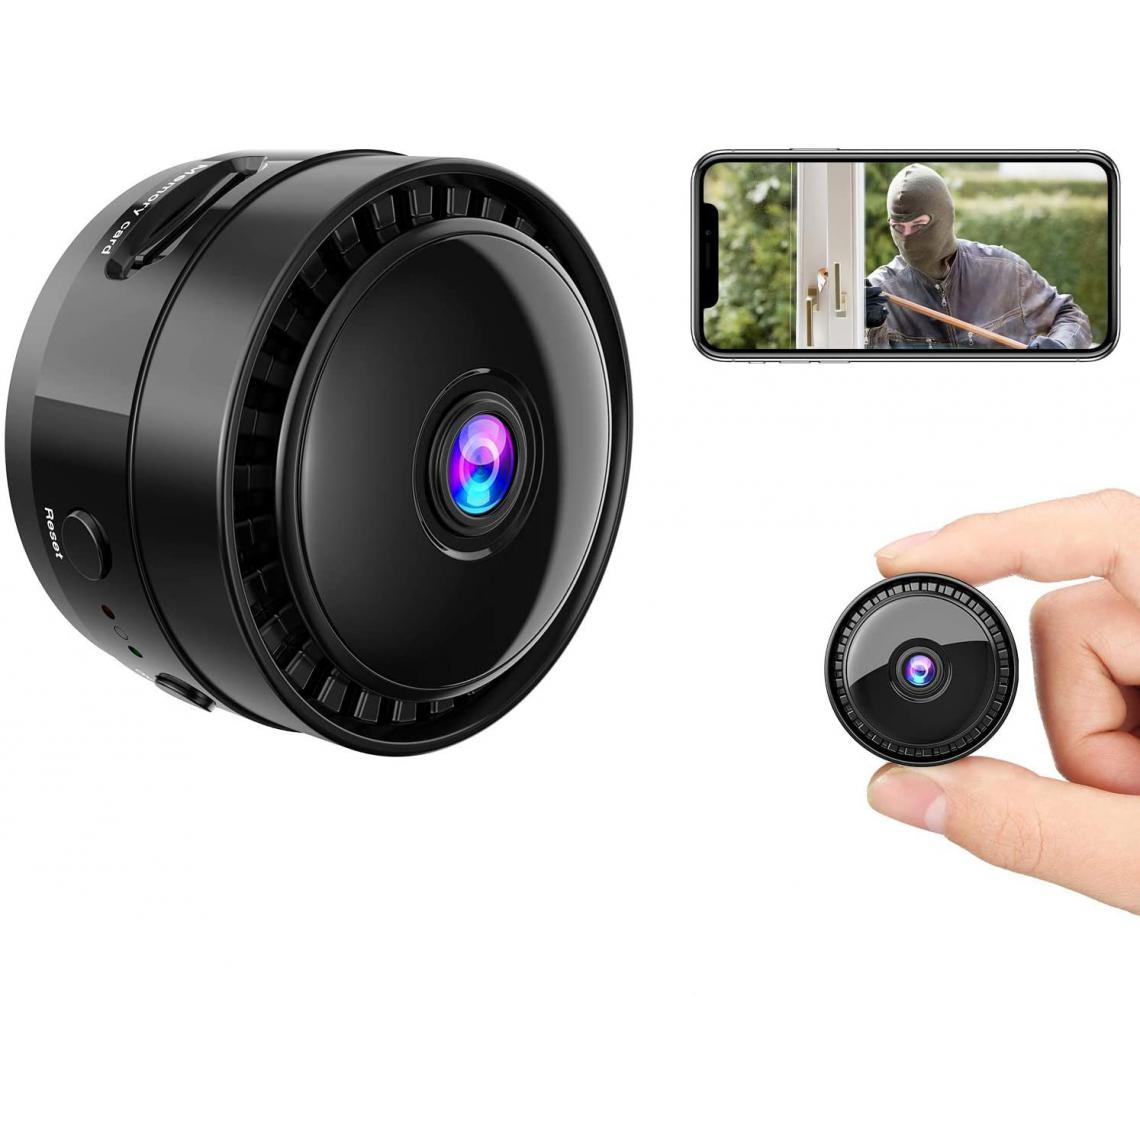 Chrono - Mini caméra, caméra WiFi 1080P HD petite caméra de surveillance de sécurité à domicile sans fil portable, petite caméra cachée avec vision nocturne, enregistreur vidéo compact intérieur / extérieur - Autres accessoires smartphone